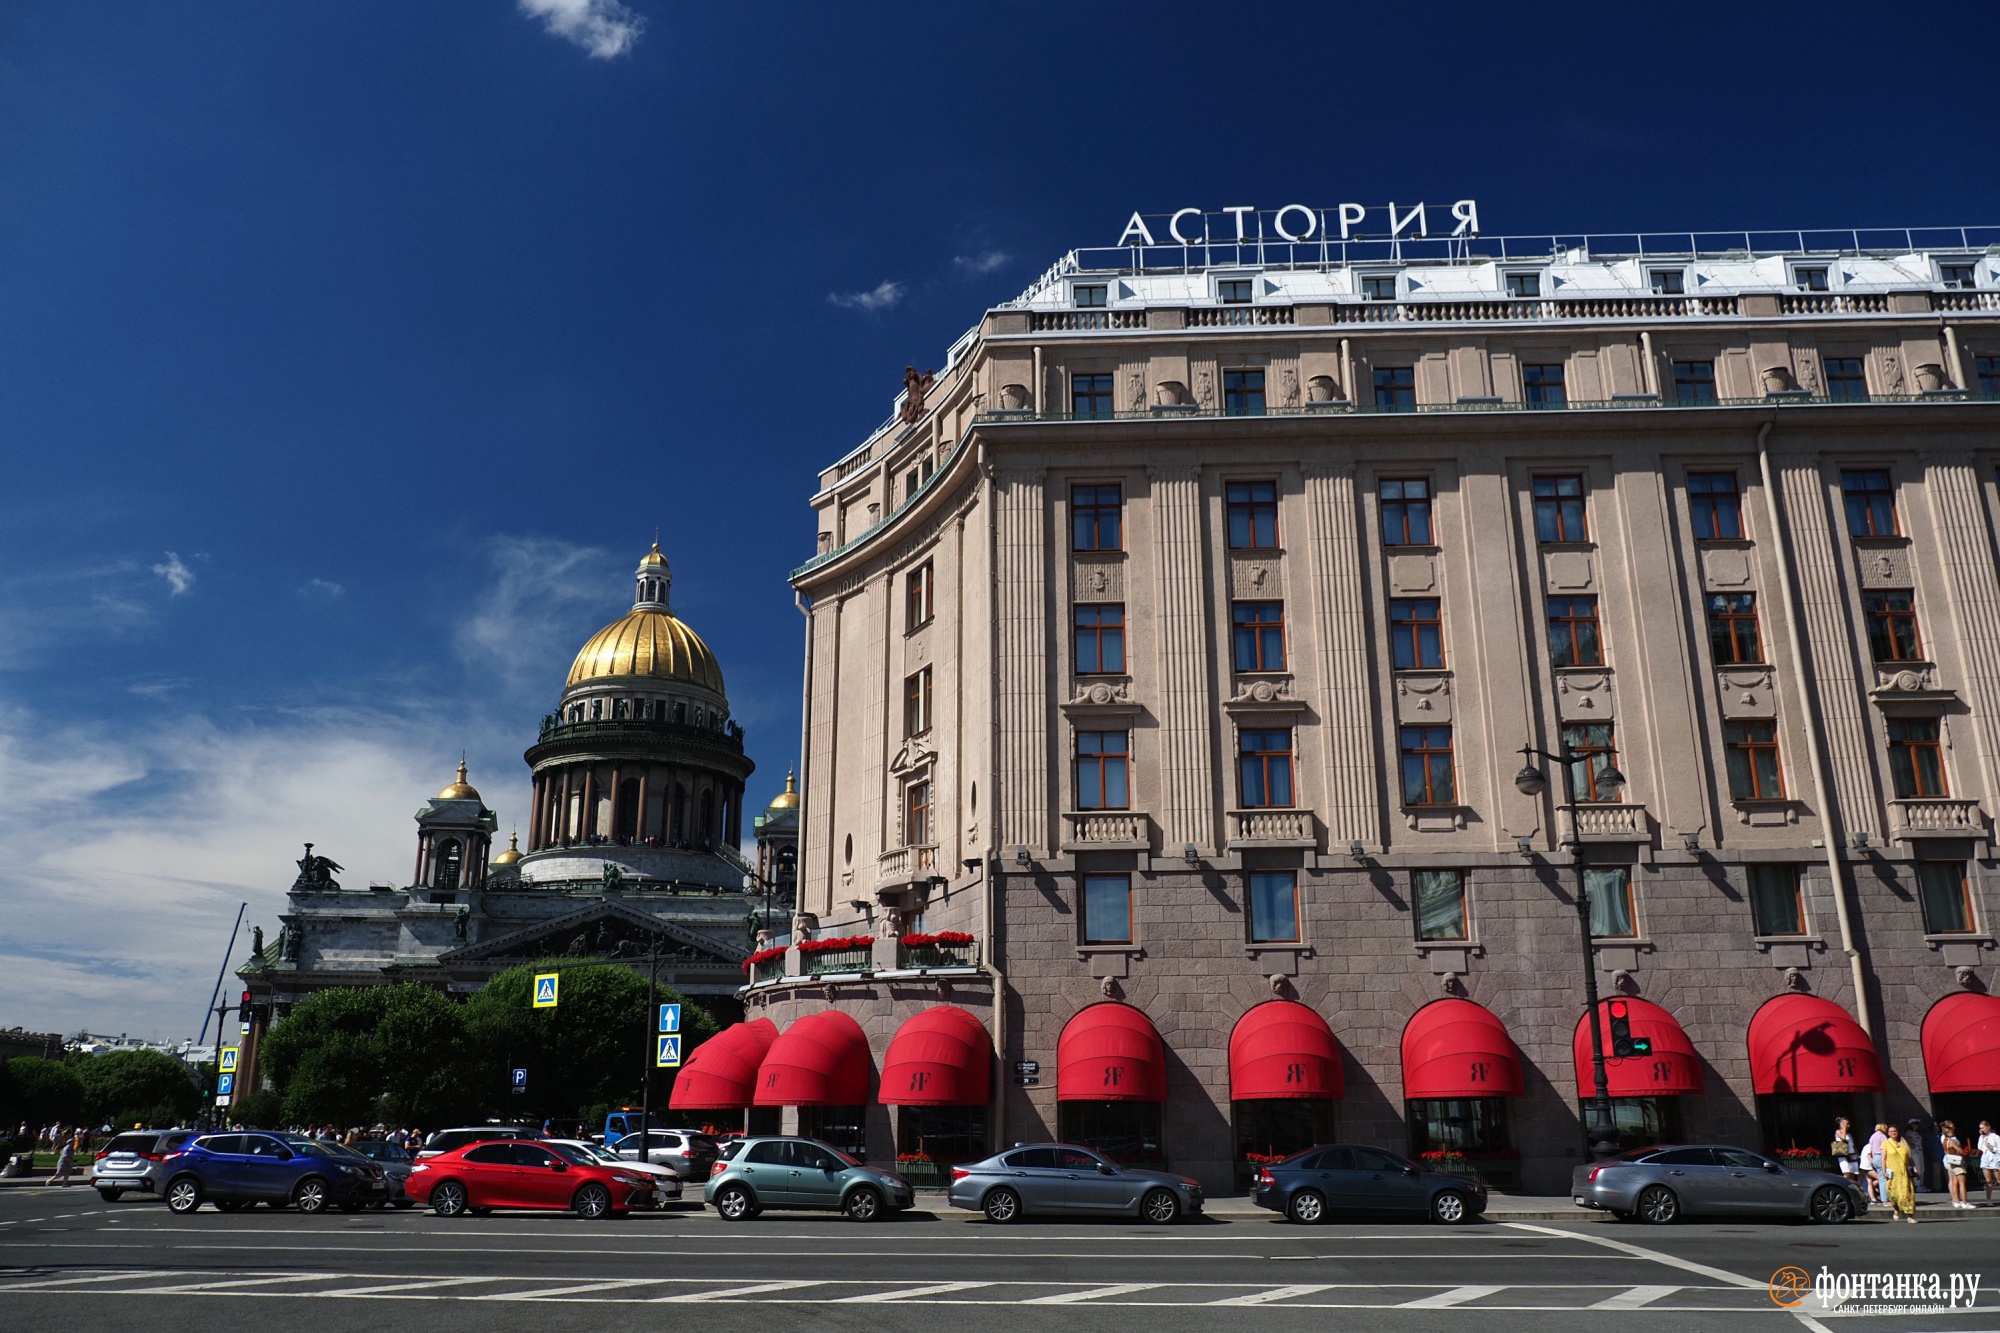 отель астория с санкт петербурге